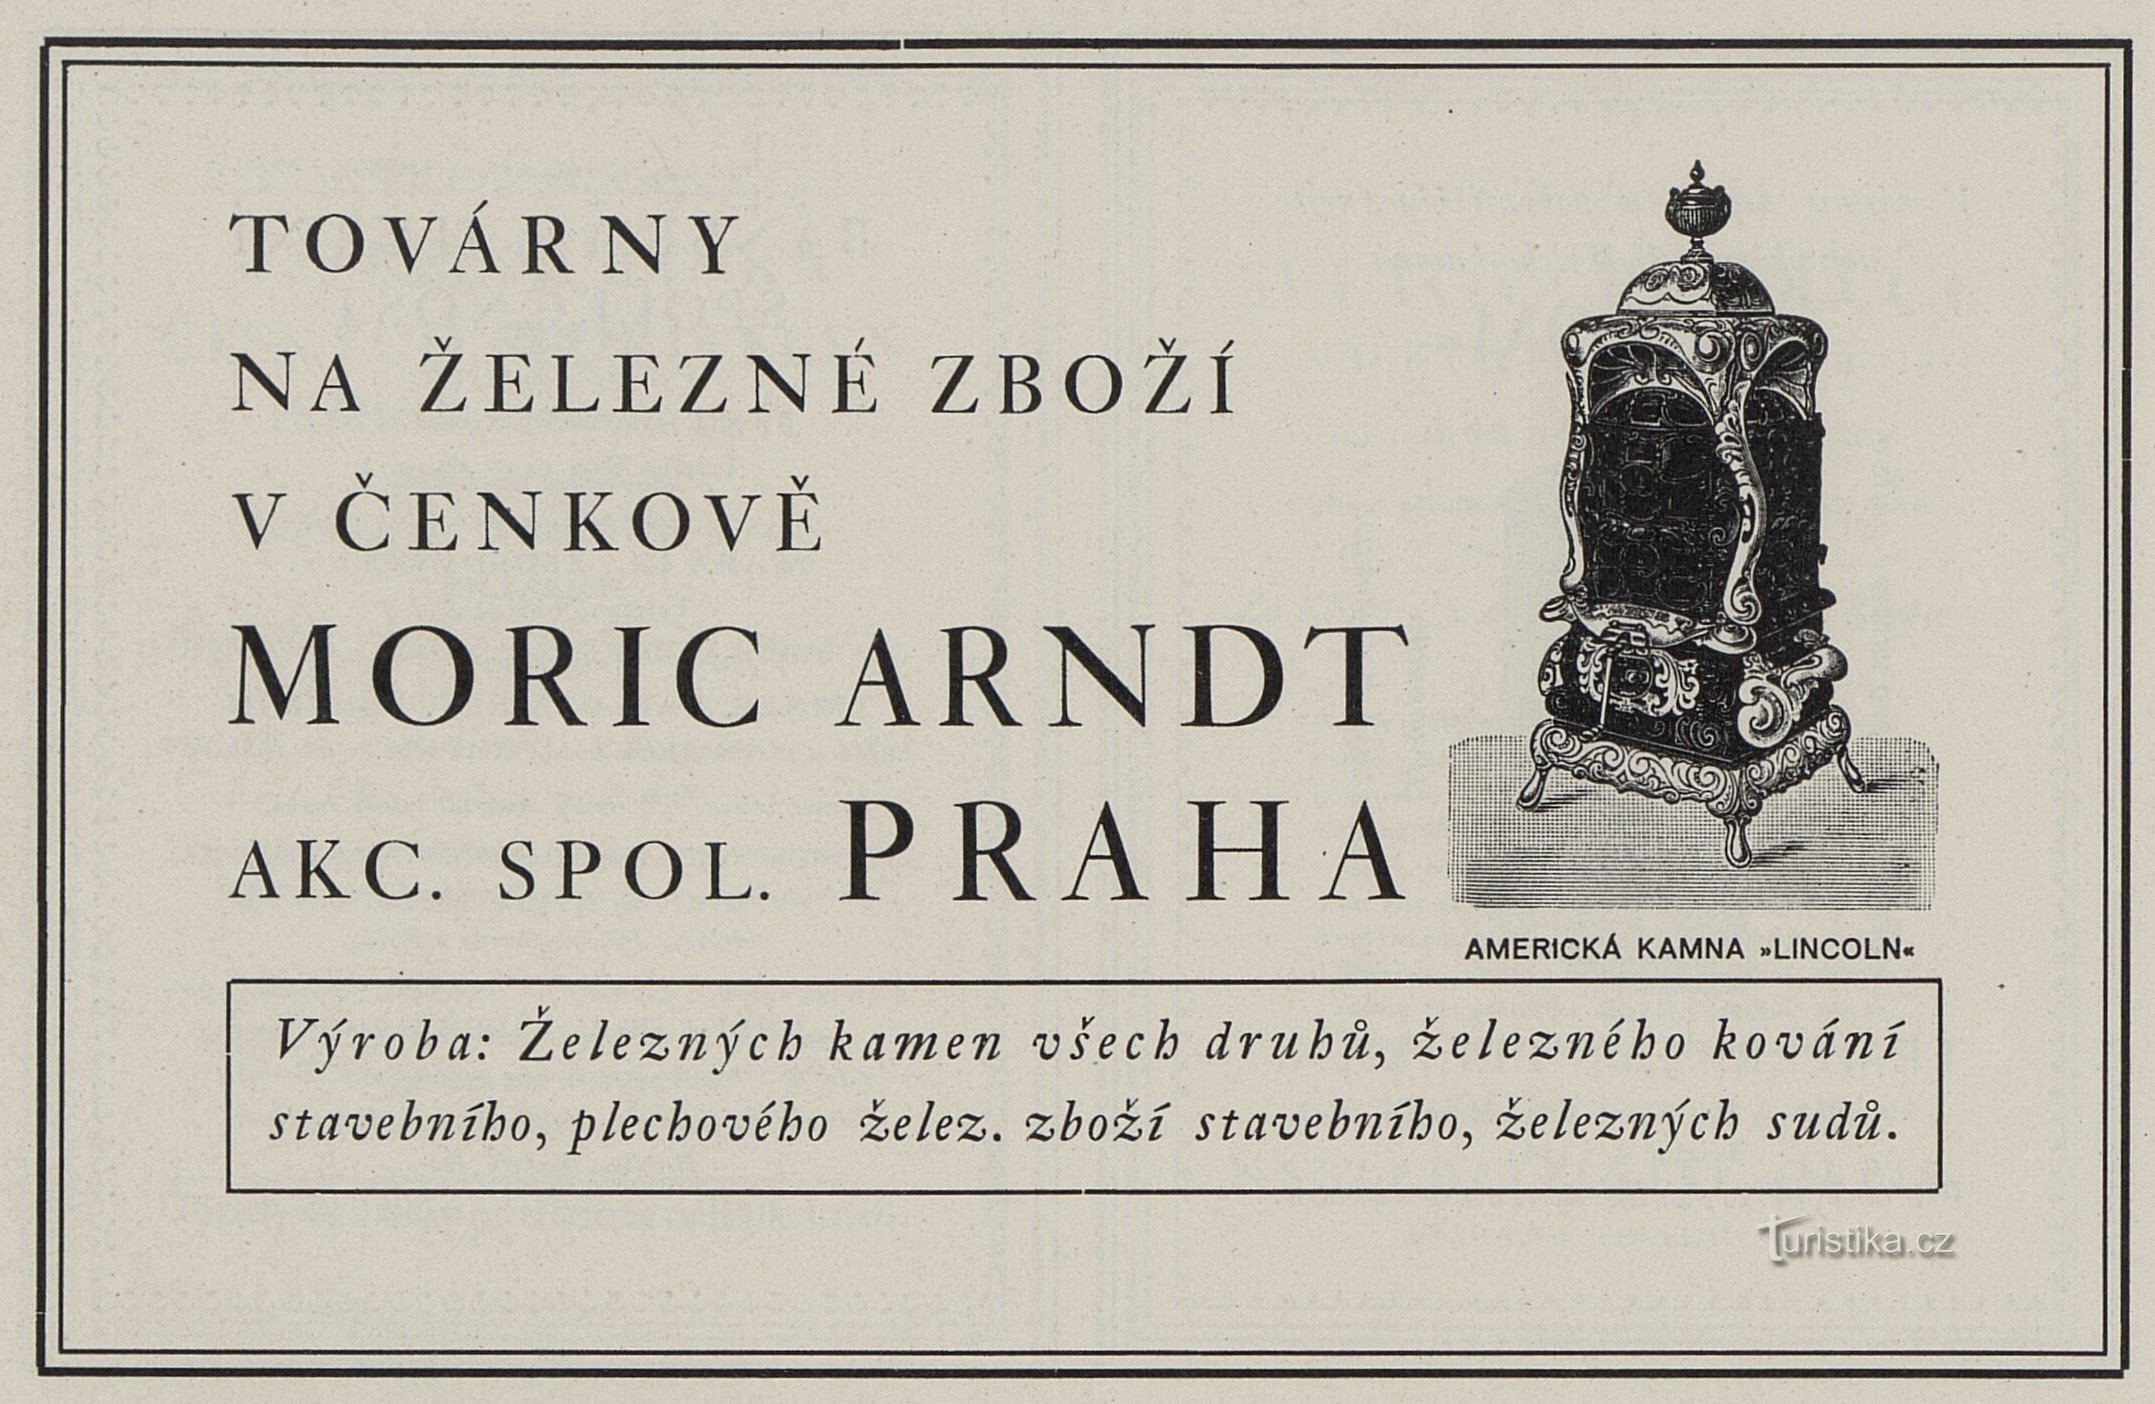 Una pubblicità del 1925 per Moric Arndt